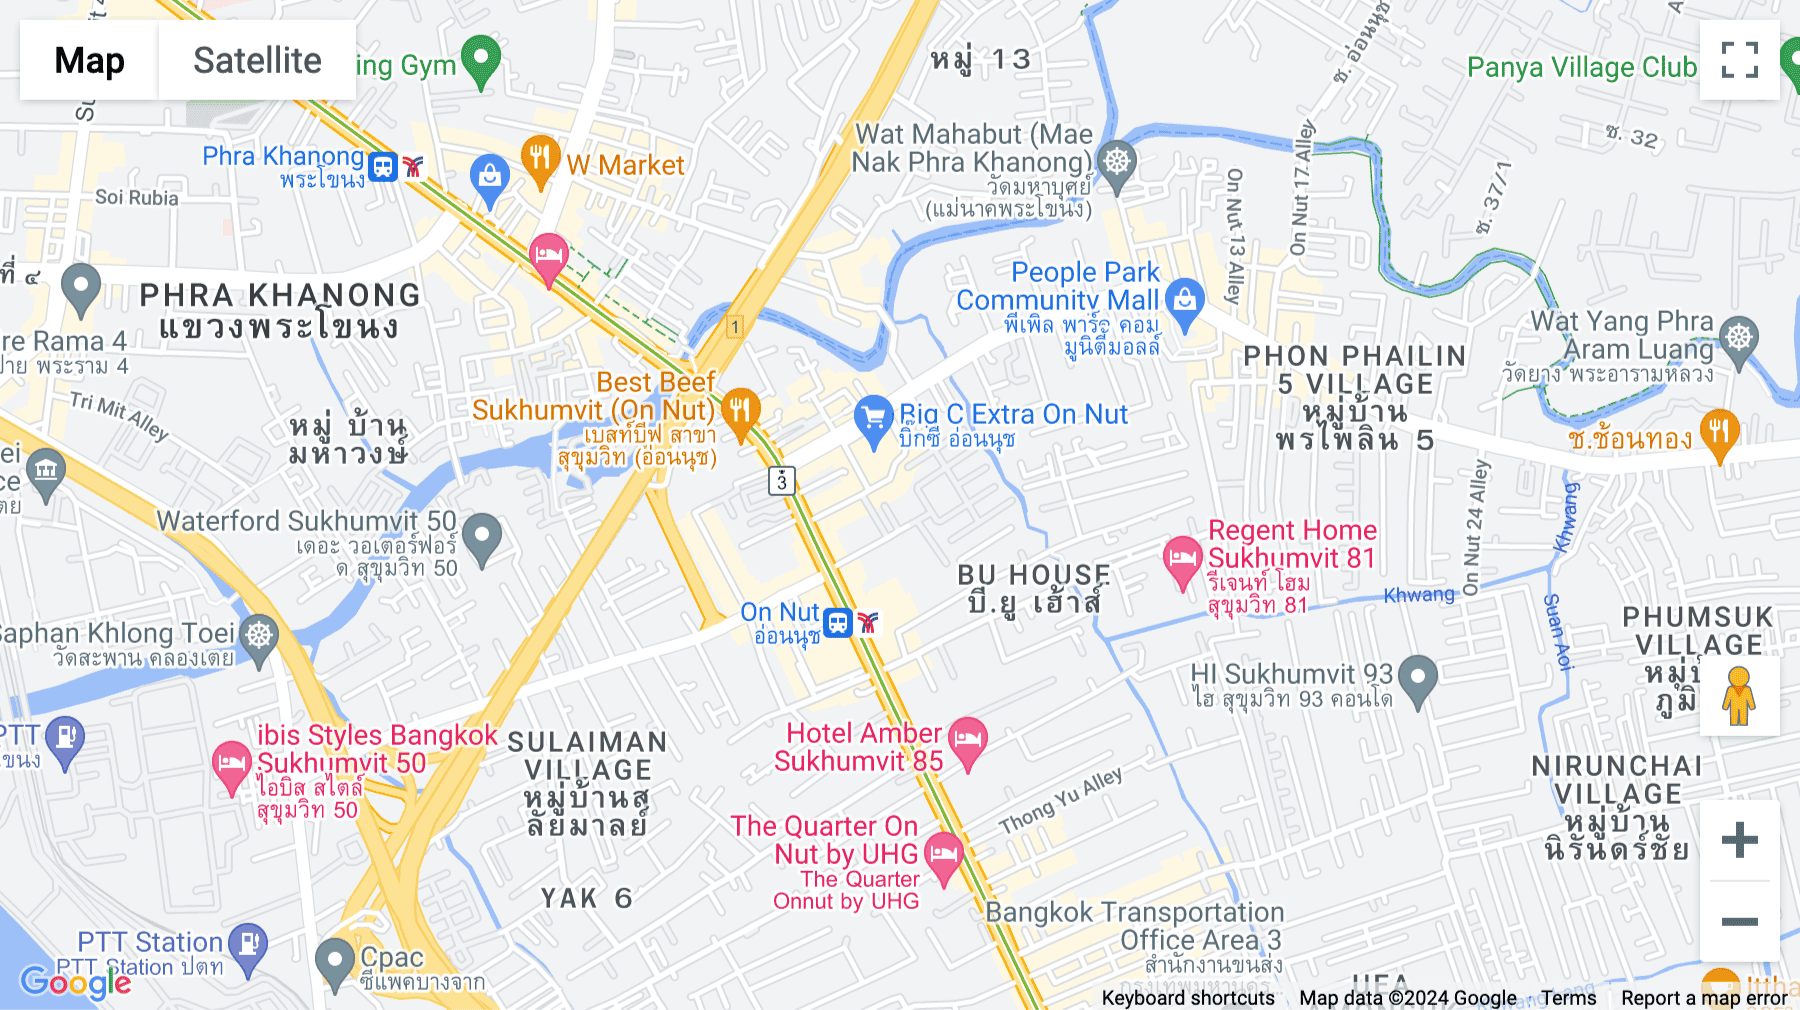 Click for interative map of 10th Floor, RSU Tower, 571 Sukhumvit Road, Soi 31, Bangkok